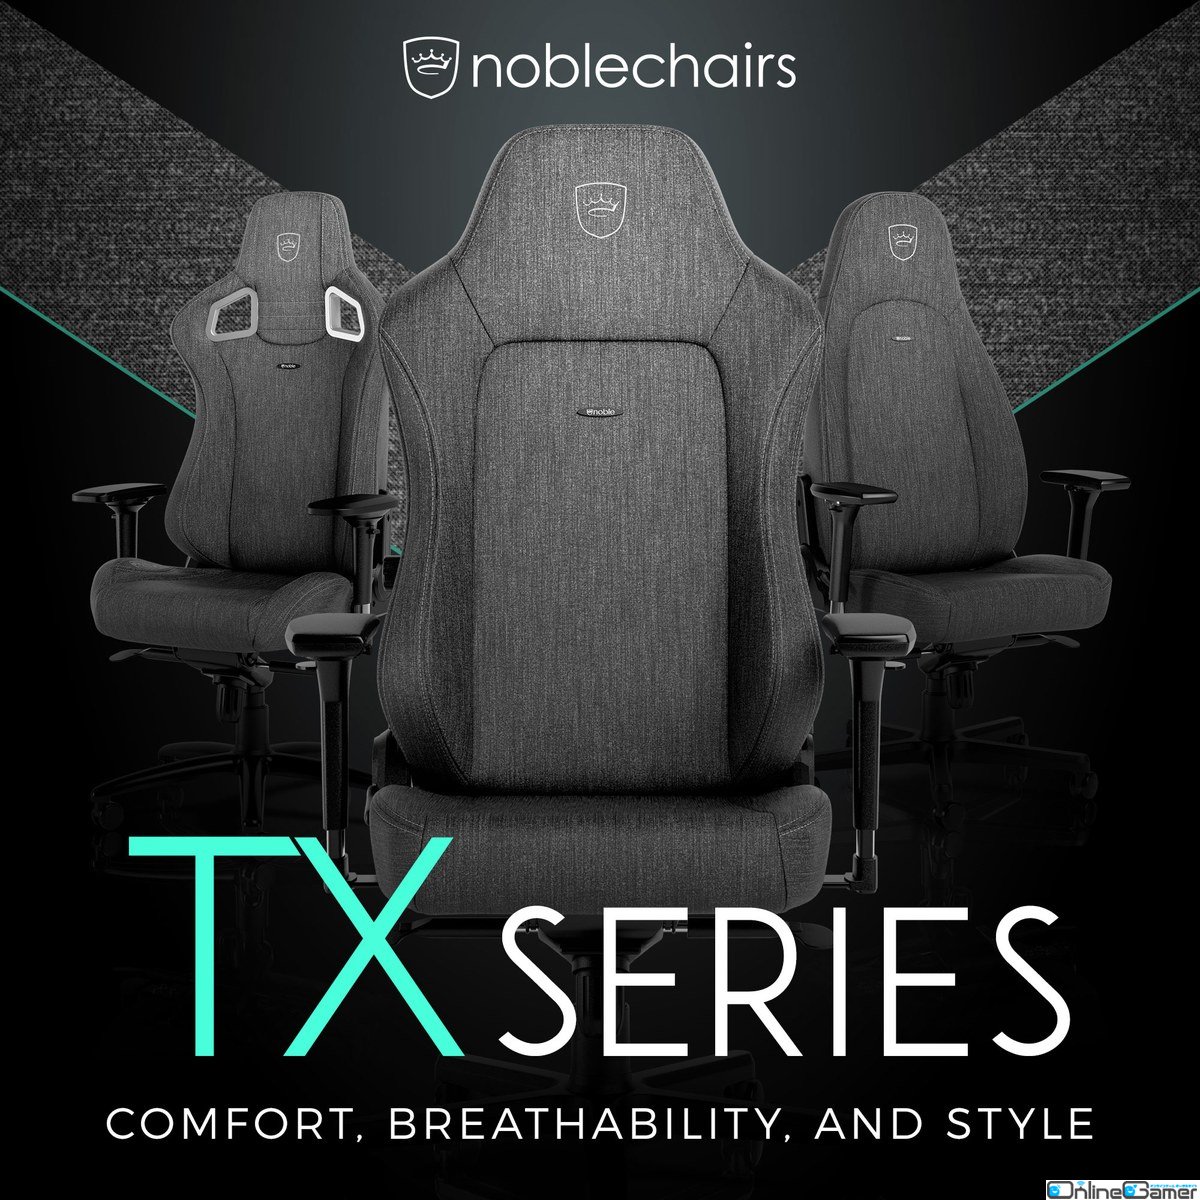 noblechairs初のファブリック素材により1年を通して快適な座り心地を実現したゲーミングチェア「TXシリーズ」3モデルが一般発売！の画像